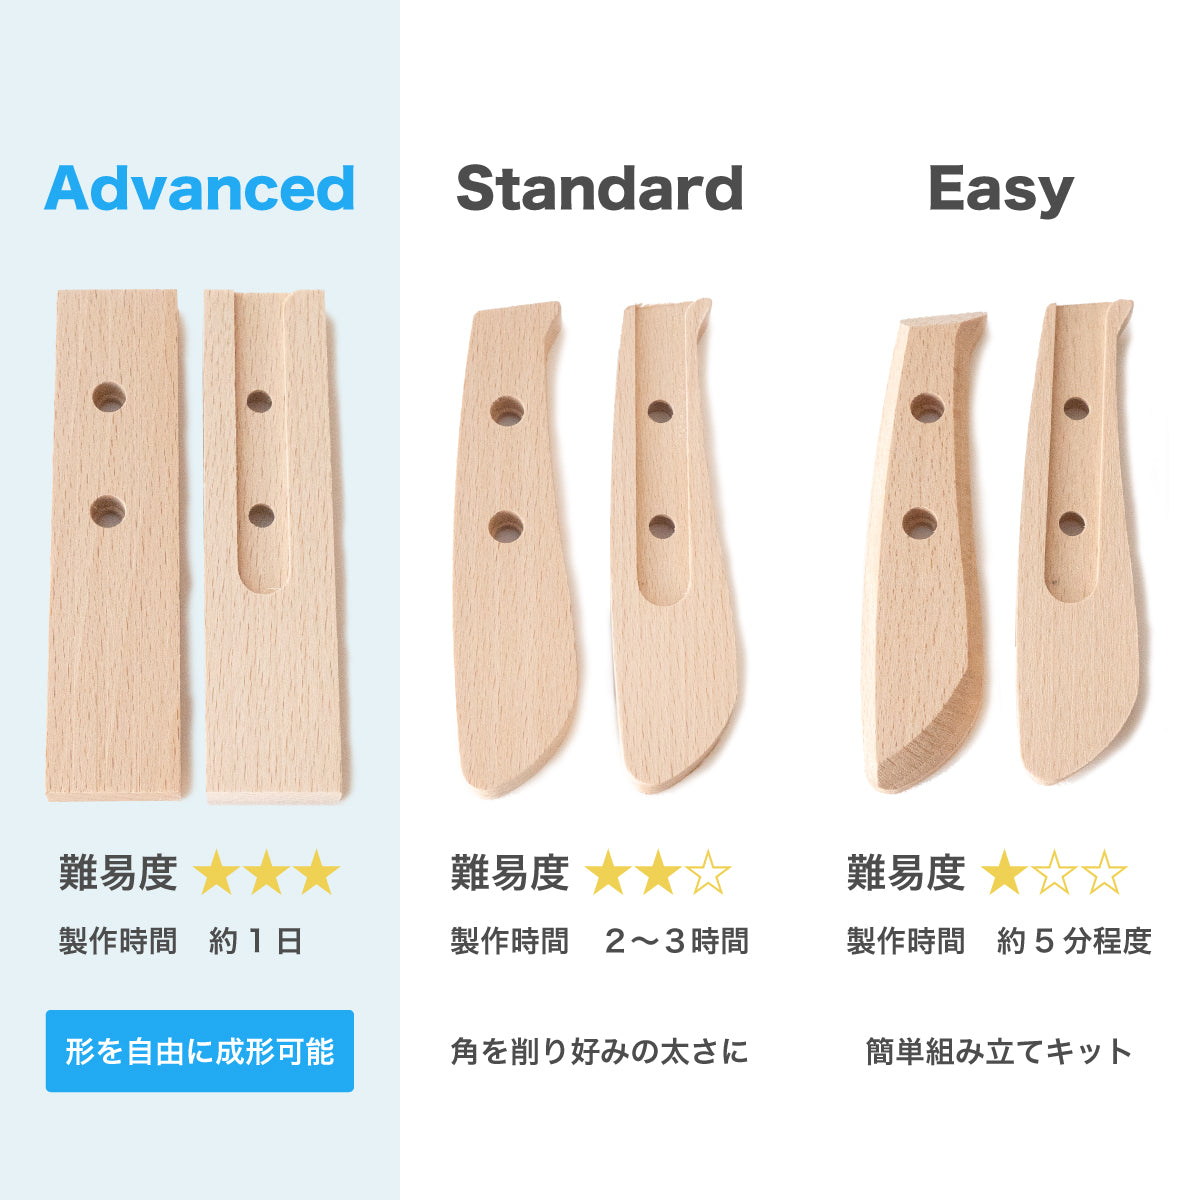 【難易度★★★】It's my knife KIBORI Advanced 5,720円